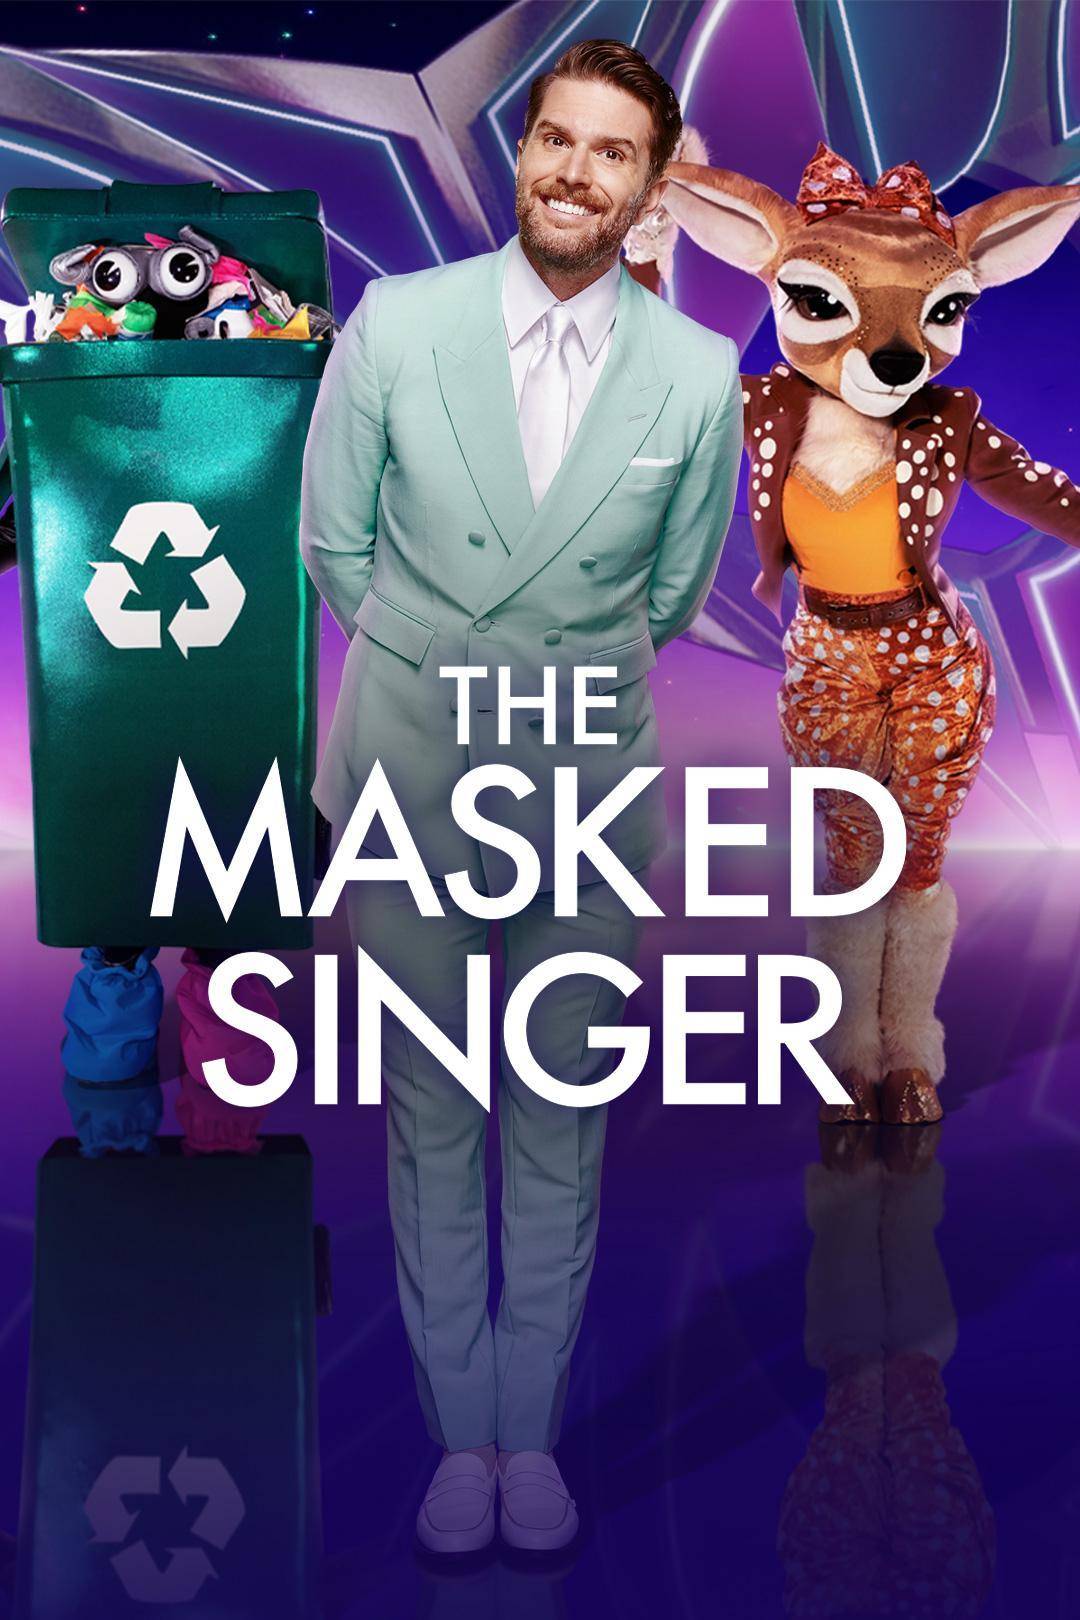 The Masked Singer UK S05E02 [1080p] HDTV (H264) 0abb10b0521dcba26a0c5538259e508f